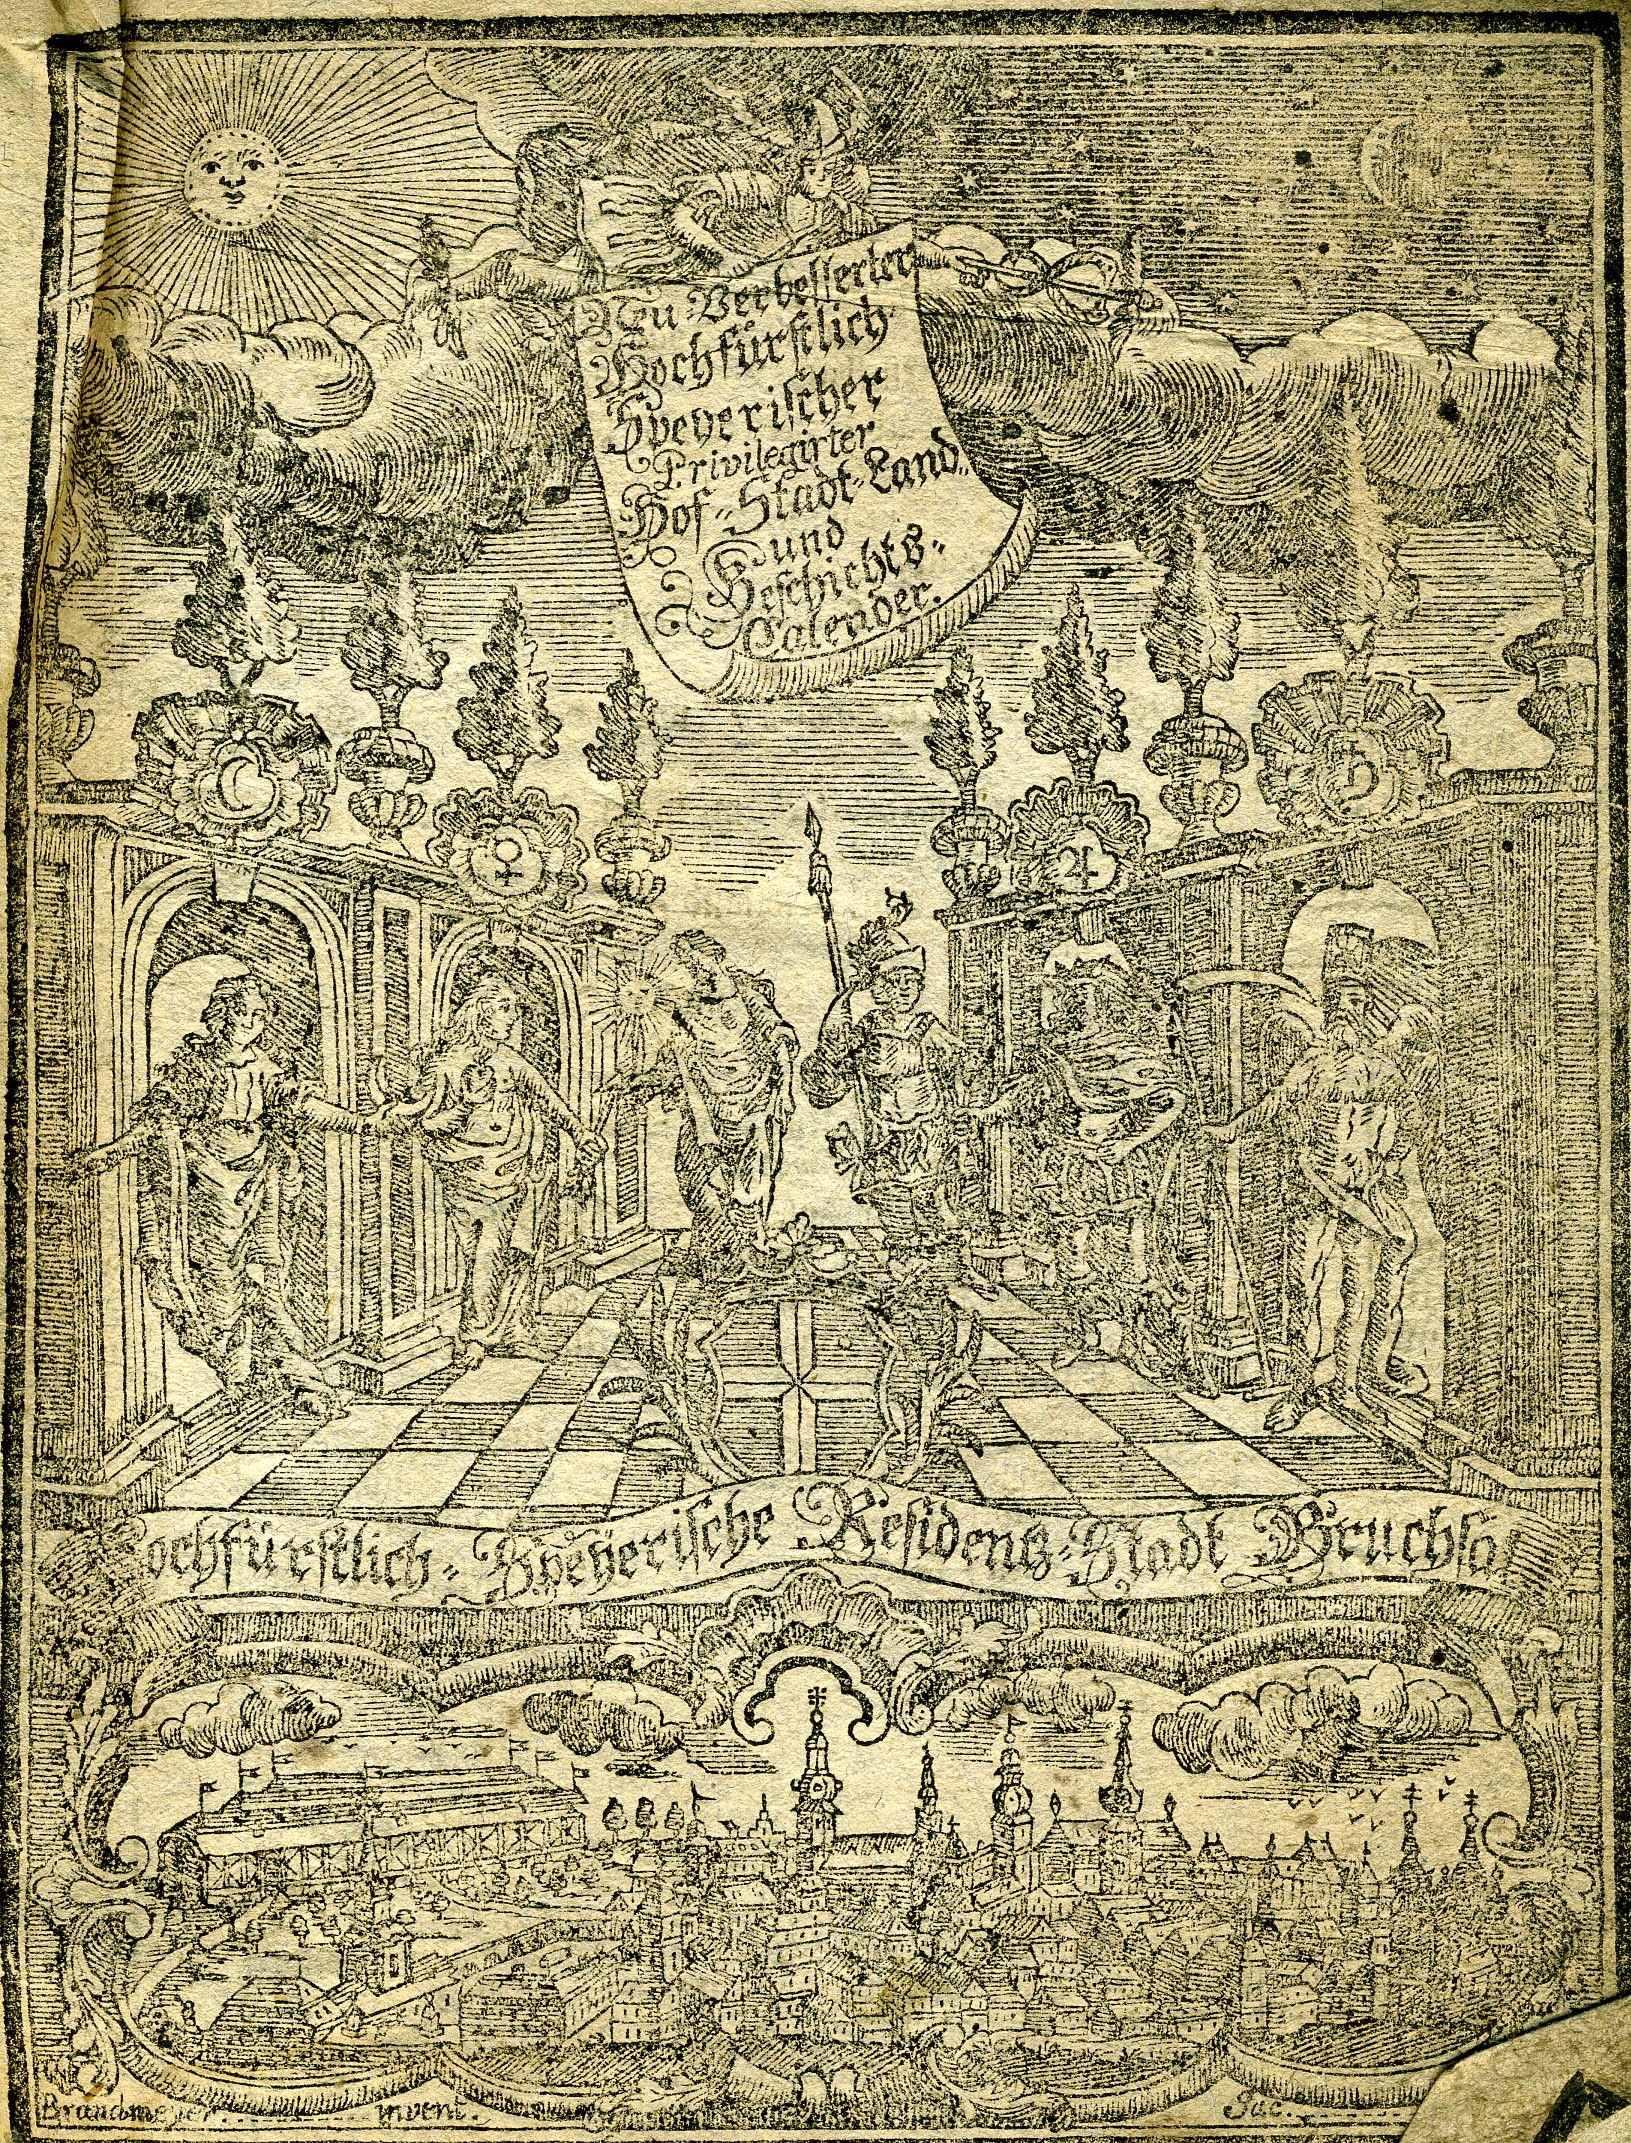 Hochfürstlicher Speyerischer- Hof-, Stadt-, Land- und Geschichtskalender für das Jahr 1783 (Historisches Museum der Pfalz, Speyer CC BY)